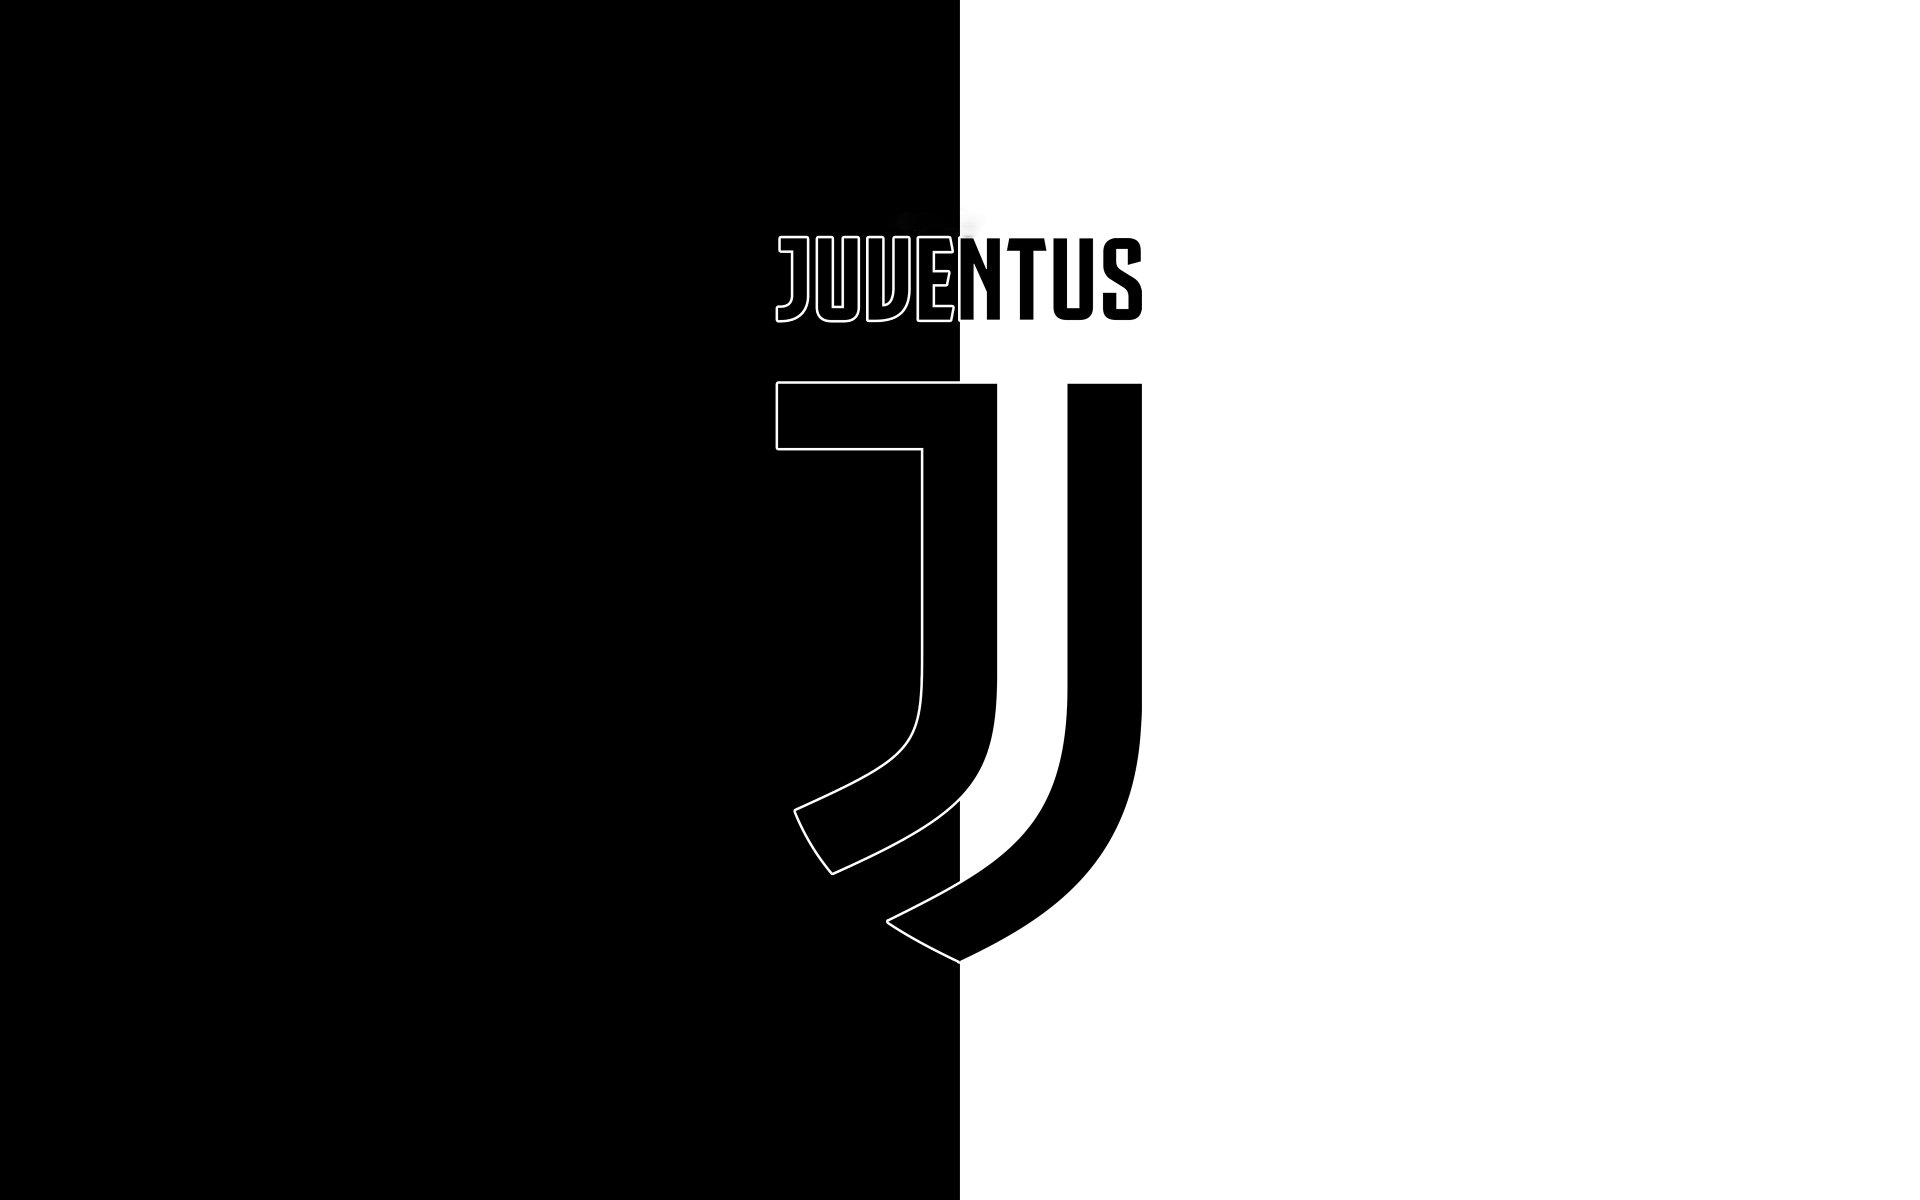 Juventus Logo 4k Ultra HD Wallpaper | Background Image ...